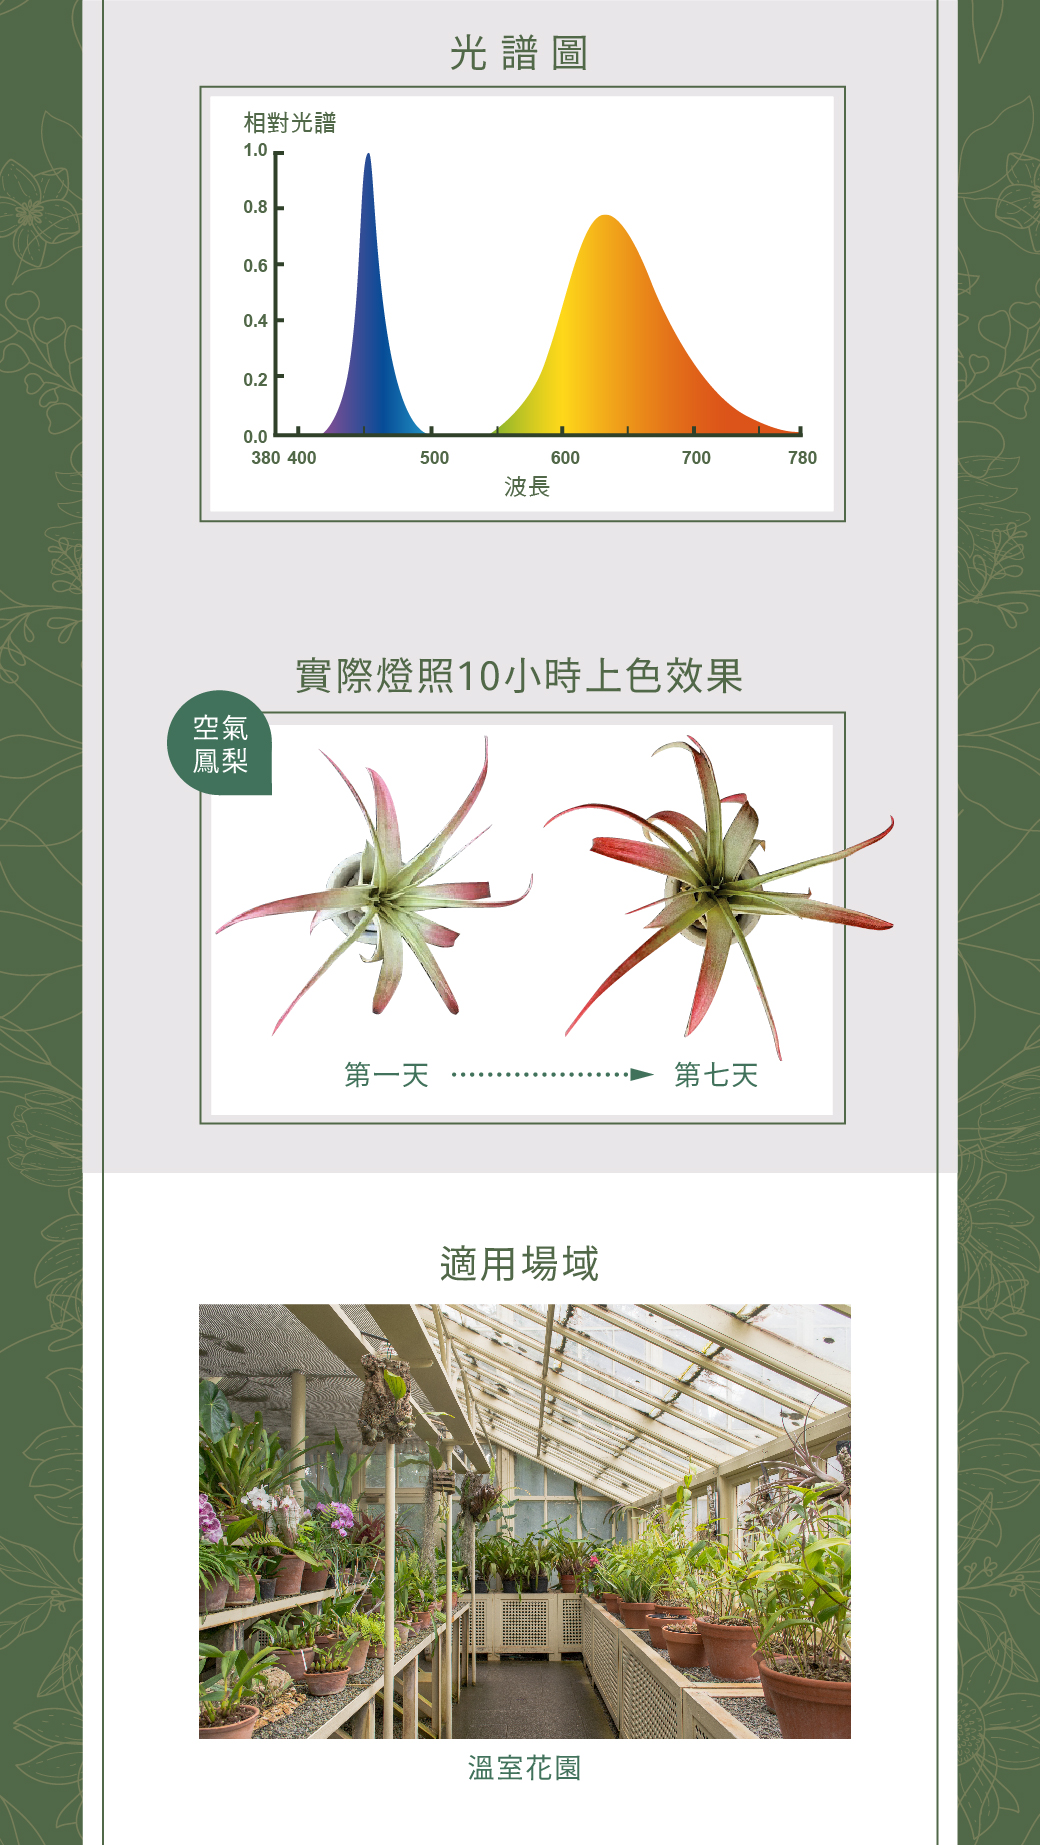 2022南區-植物燈管_官網圖文-v01_02